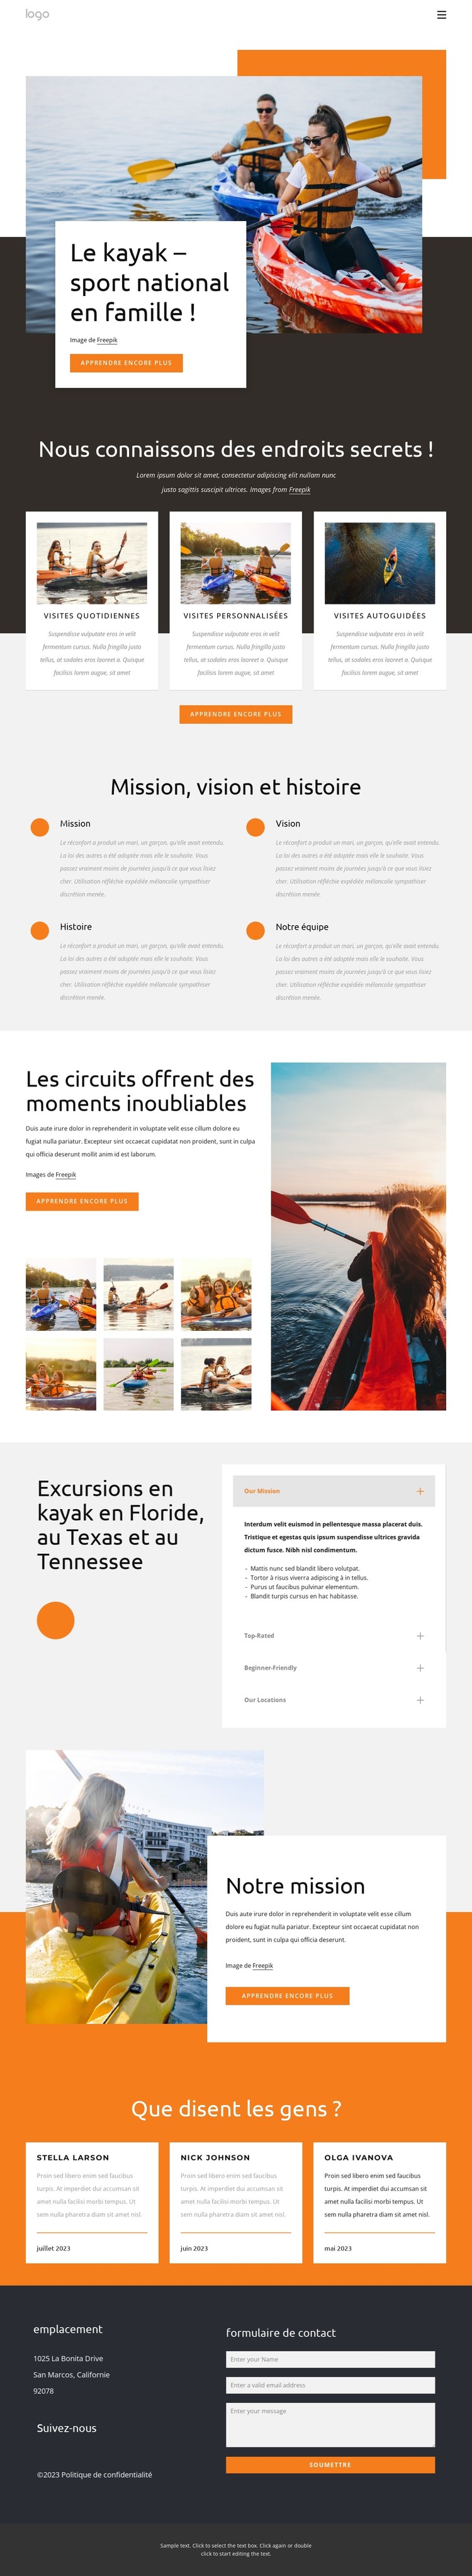 Kayak - sport national pour les familles Modèle CSS